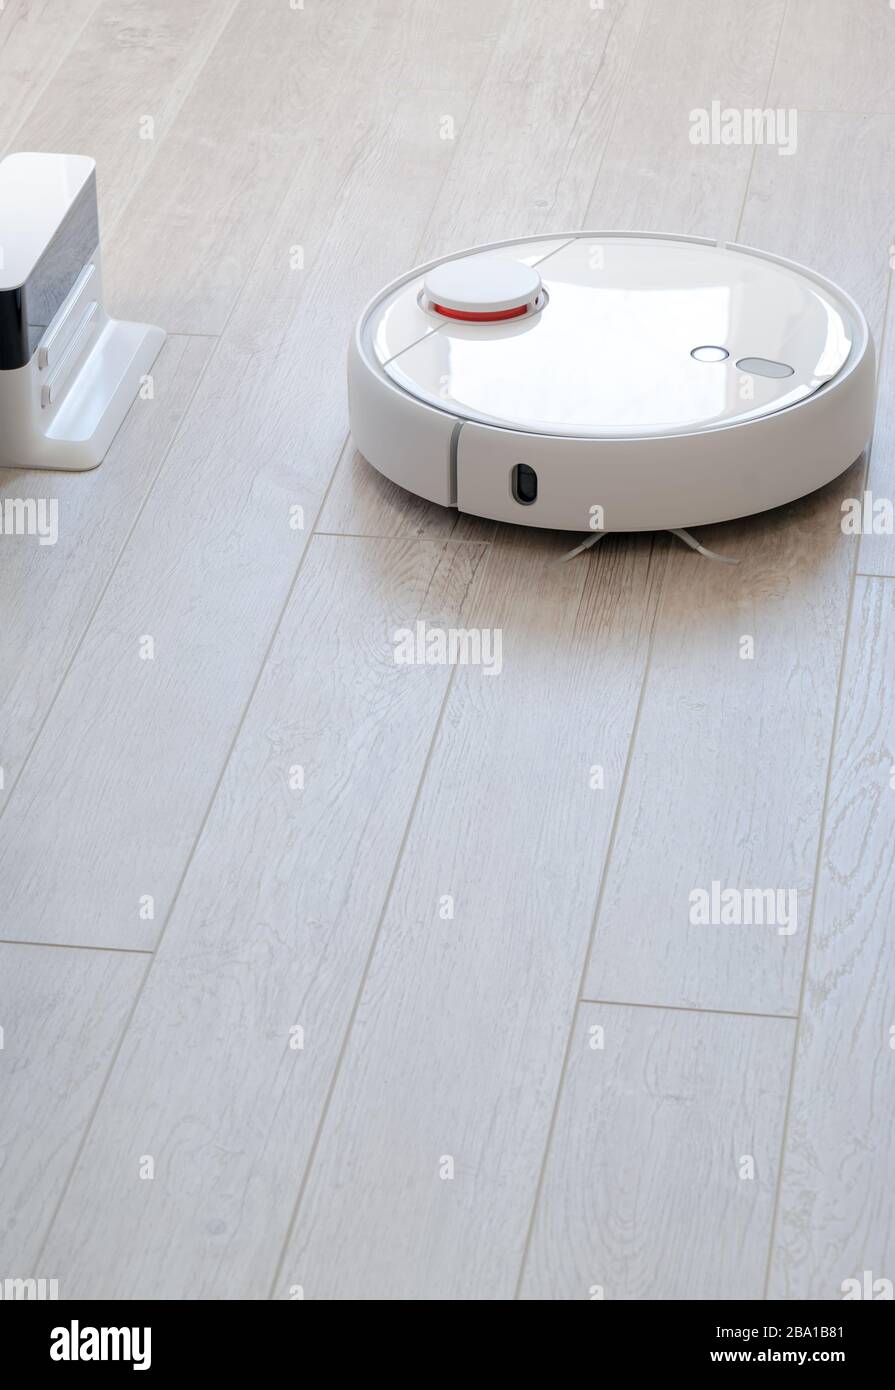 White round roboticobotic vacuum cleaner on laminate - technology housework Stock Photo